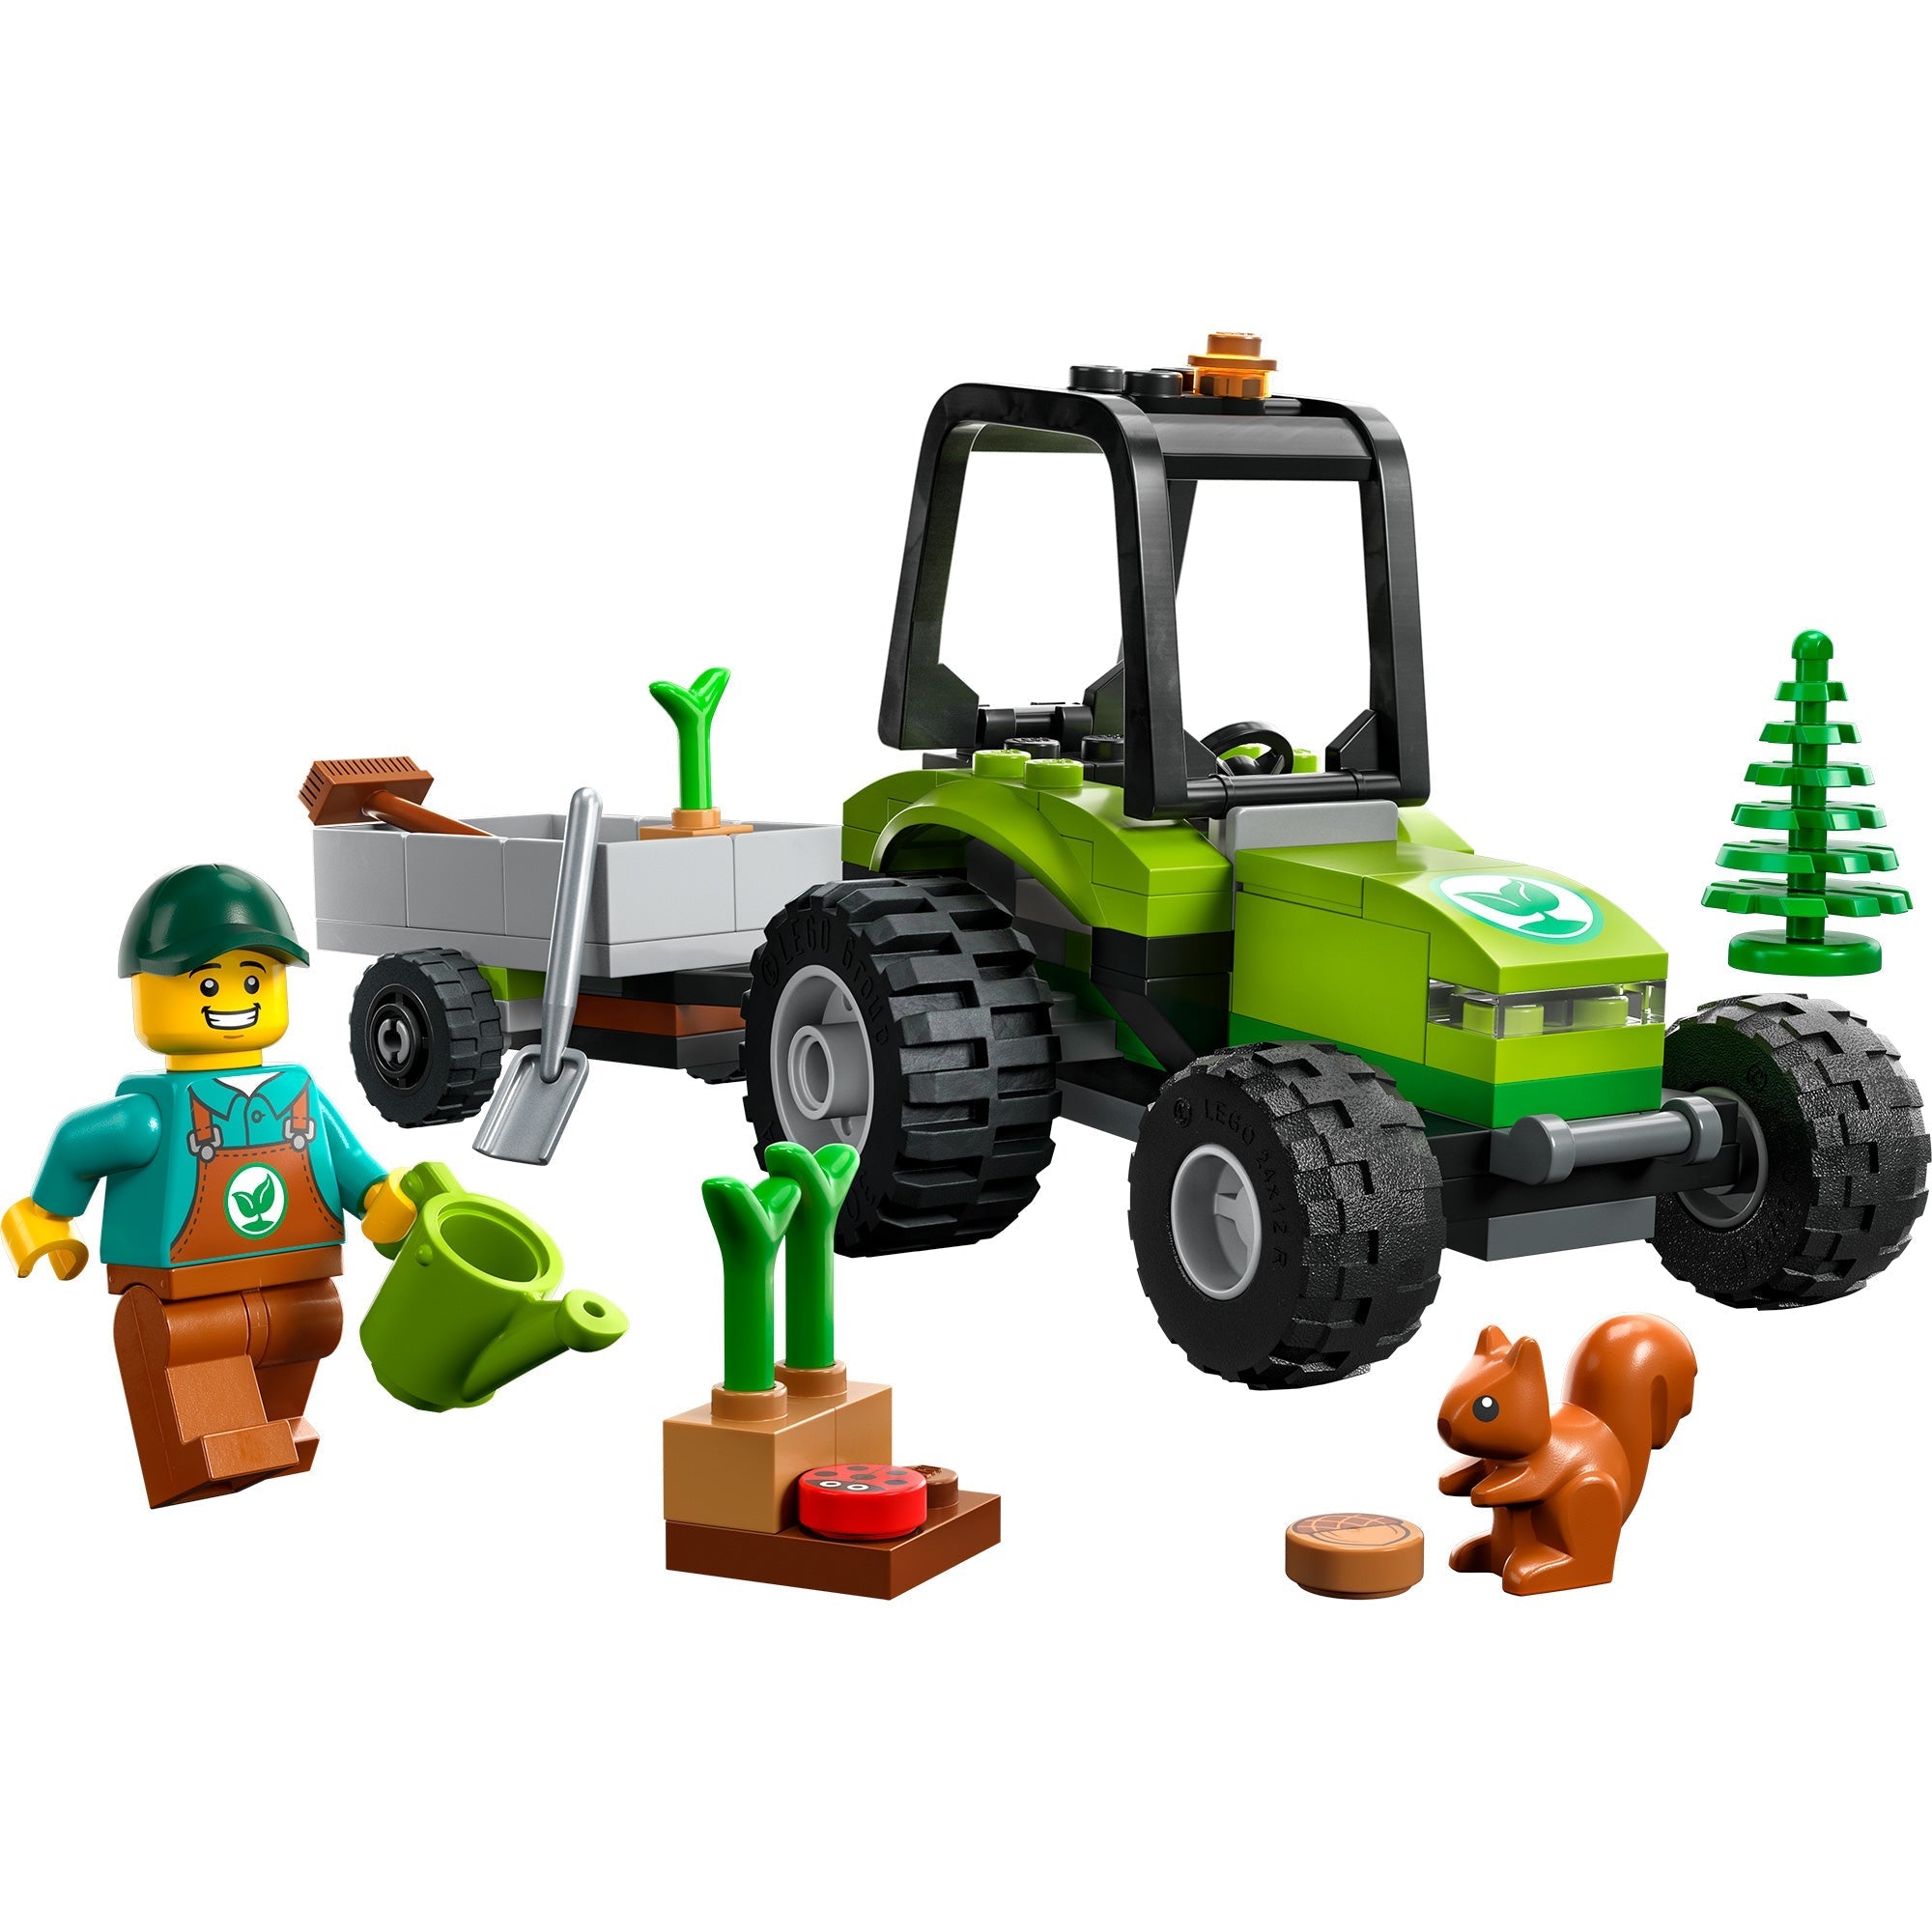 LEGO City 60287 - Les Super Véhicules Le Tracteur, Set de